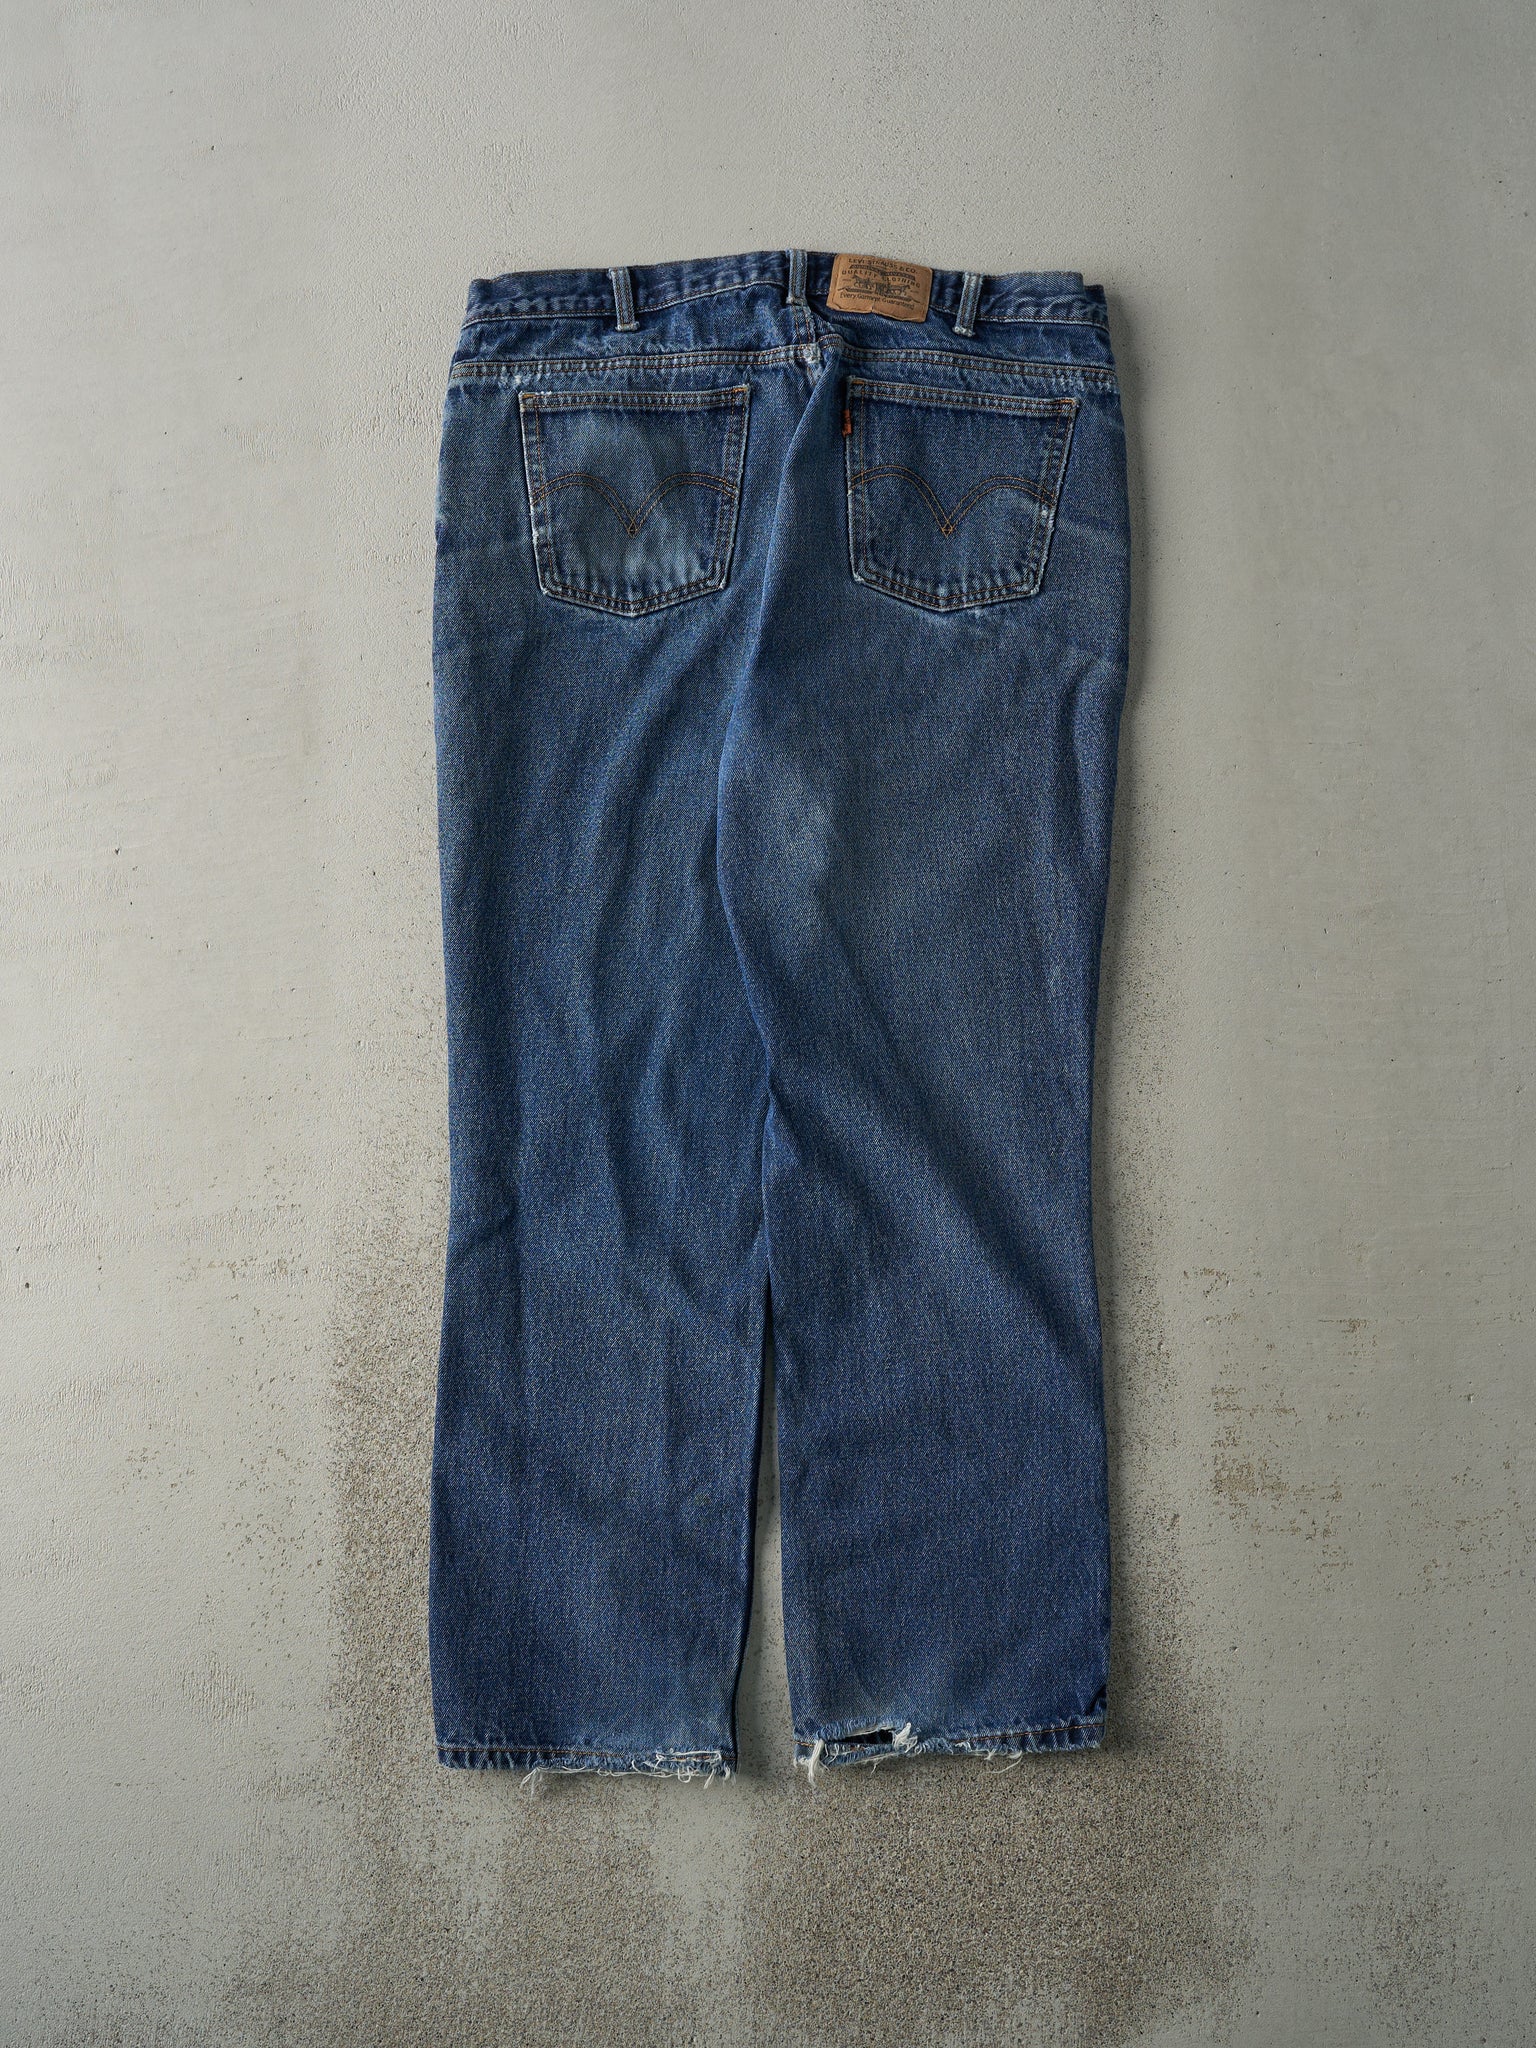 Vintage 90s Mid Wash Levi's Orange Tab Jeans (36x28.5)